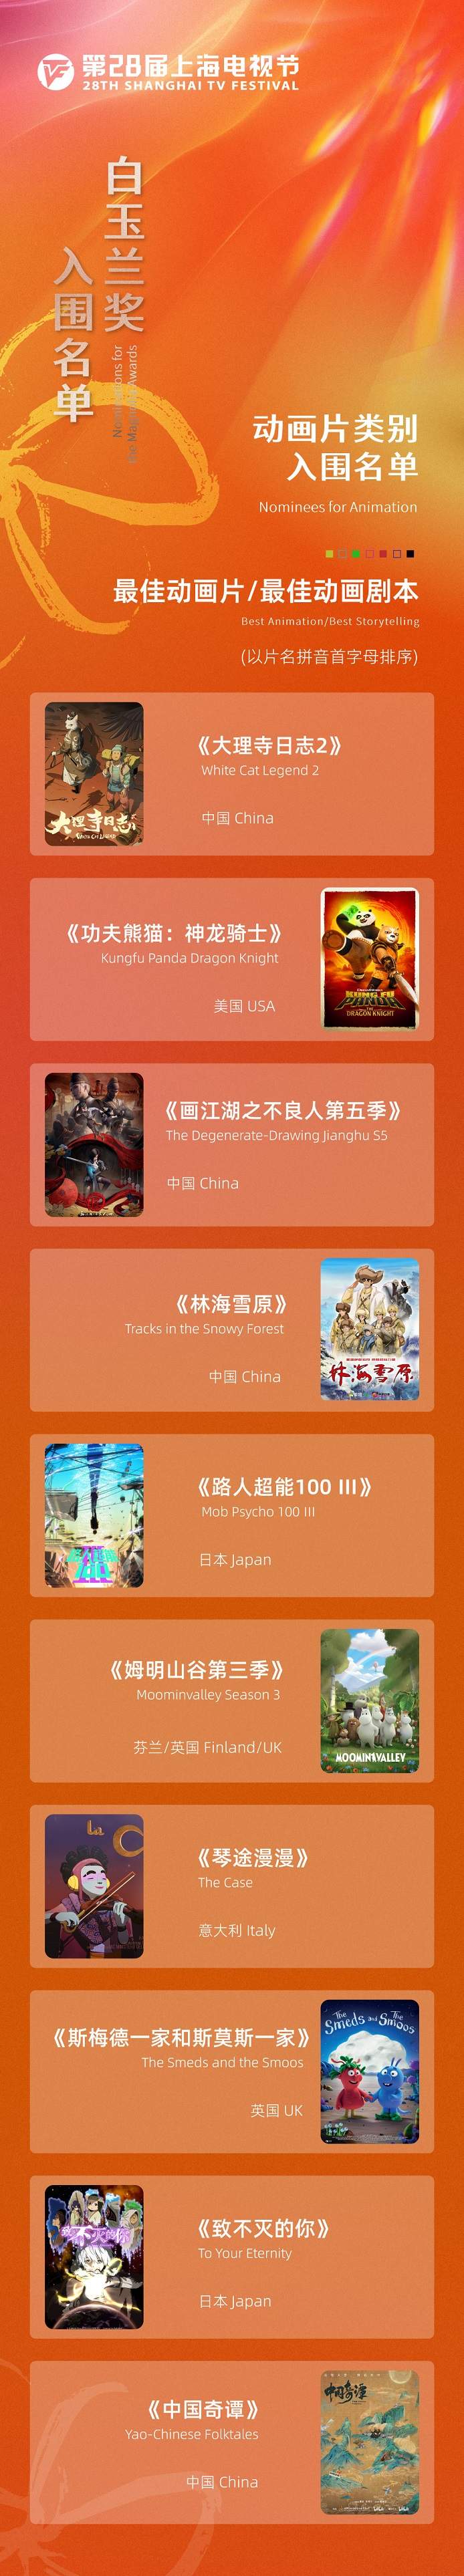 第二十八届上海电视节白玉兰奖入围名单公布